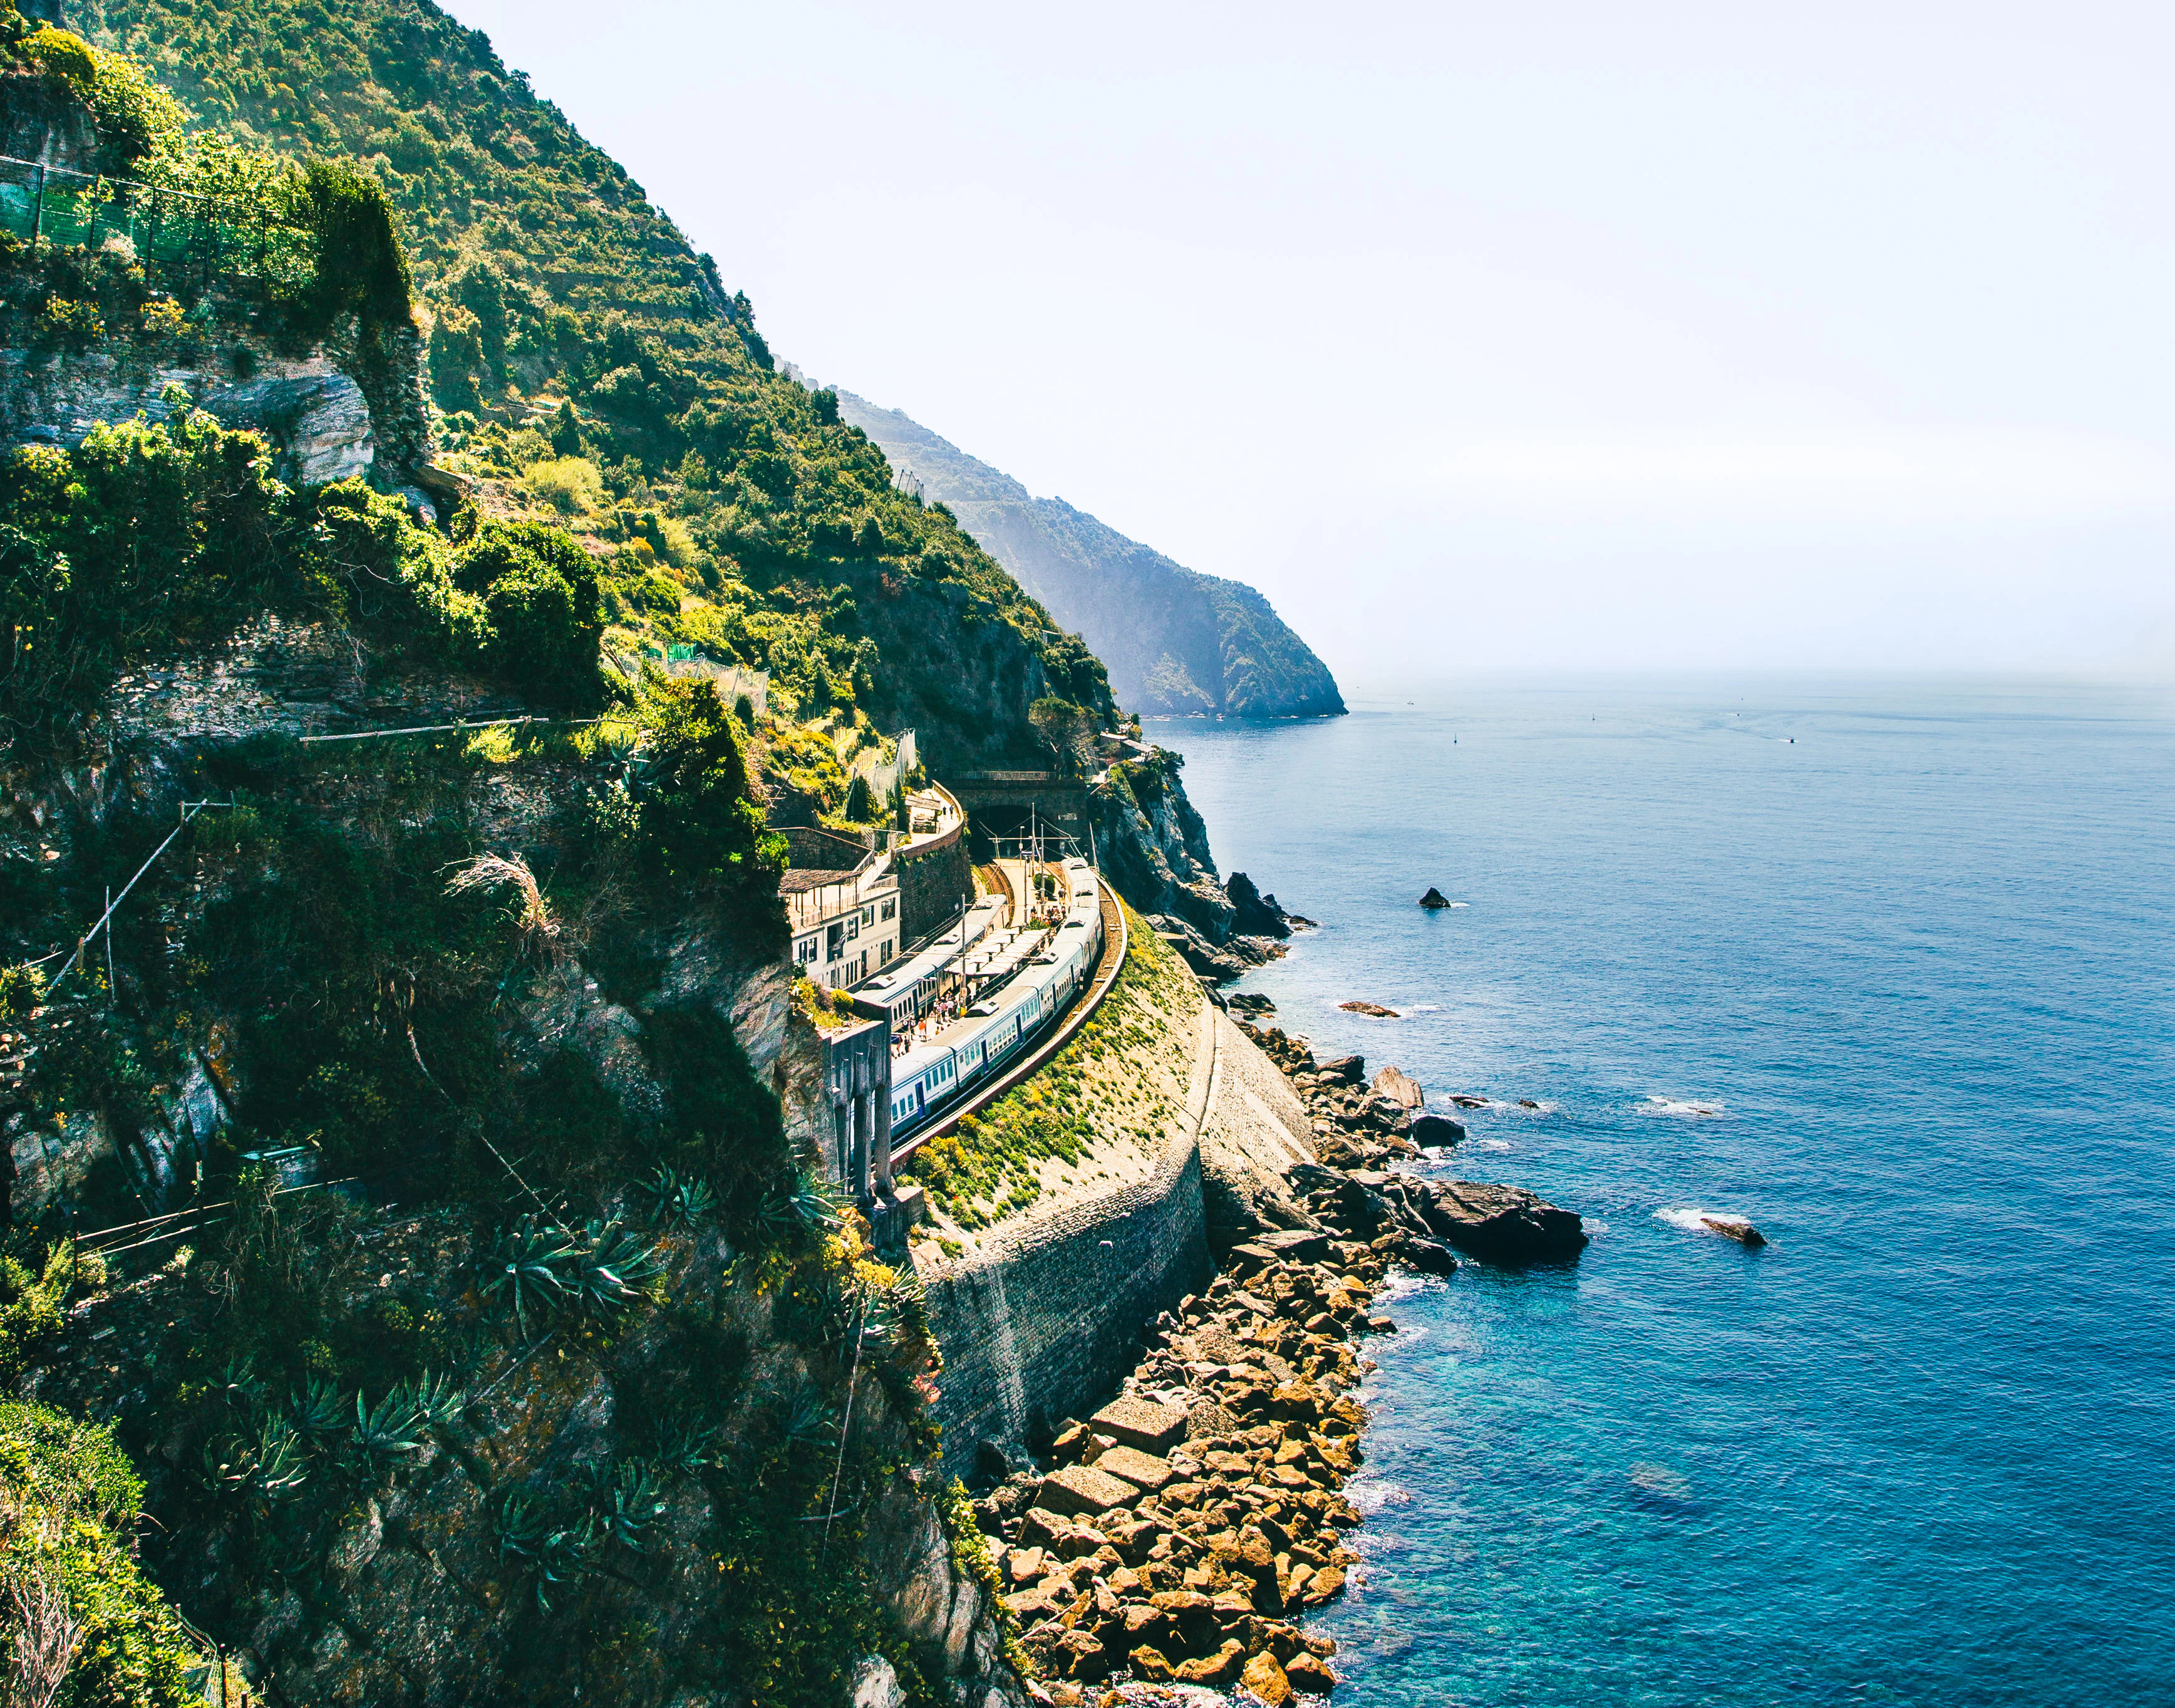 A cliff-view in the Cinque Terre area of Liguria | Crosta & Mollica